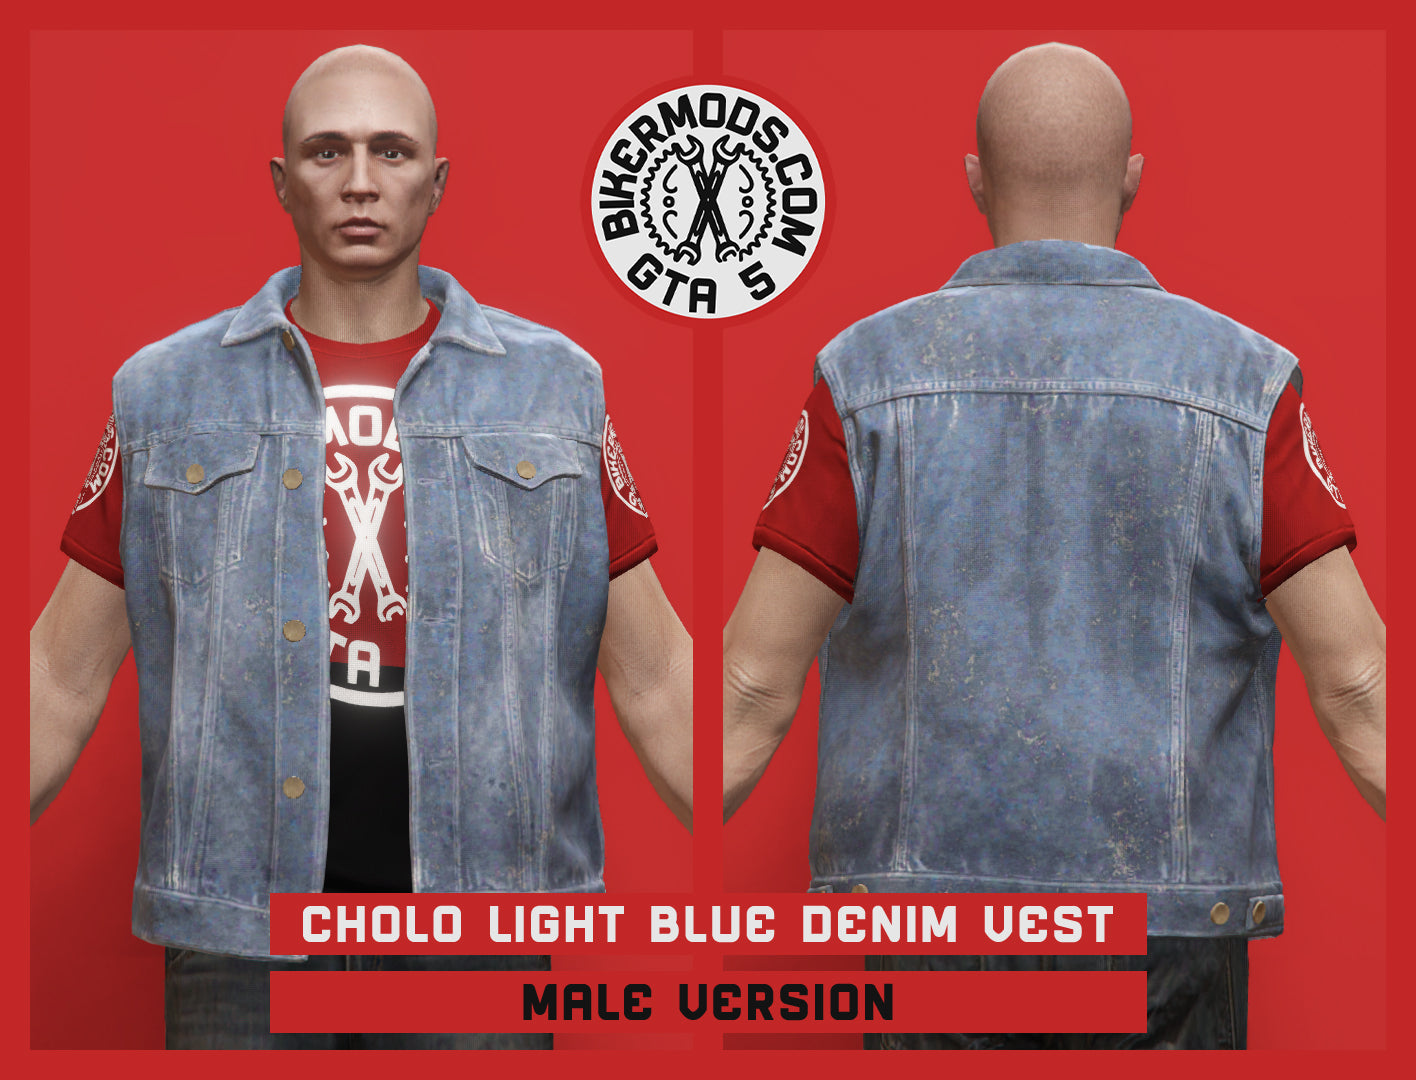 Cholo Light Blue Denim Vest (Male)